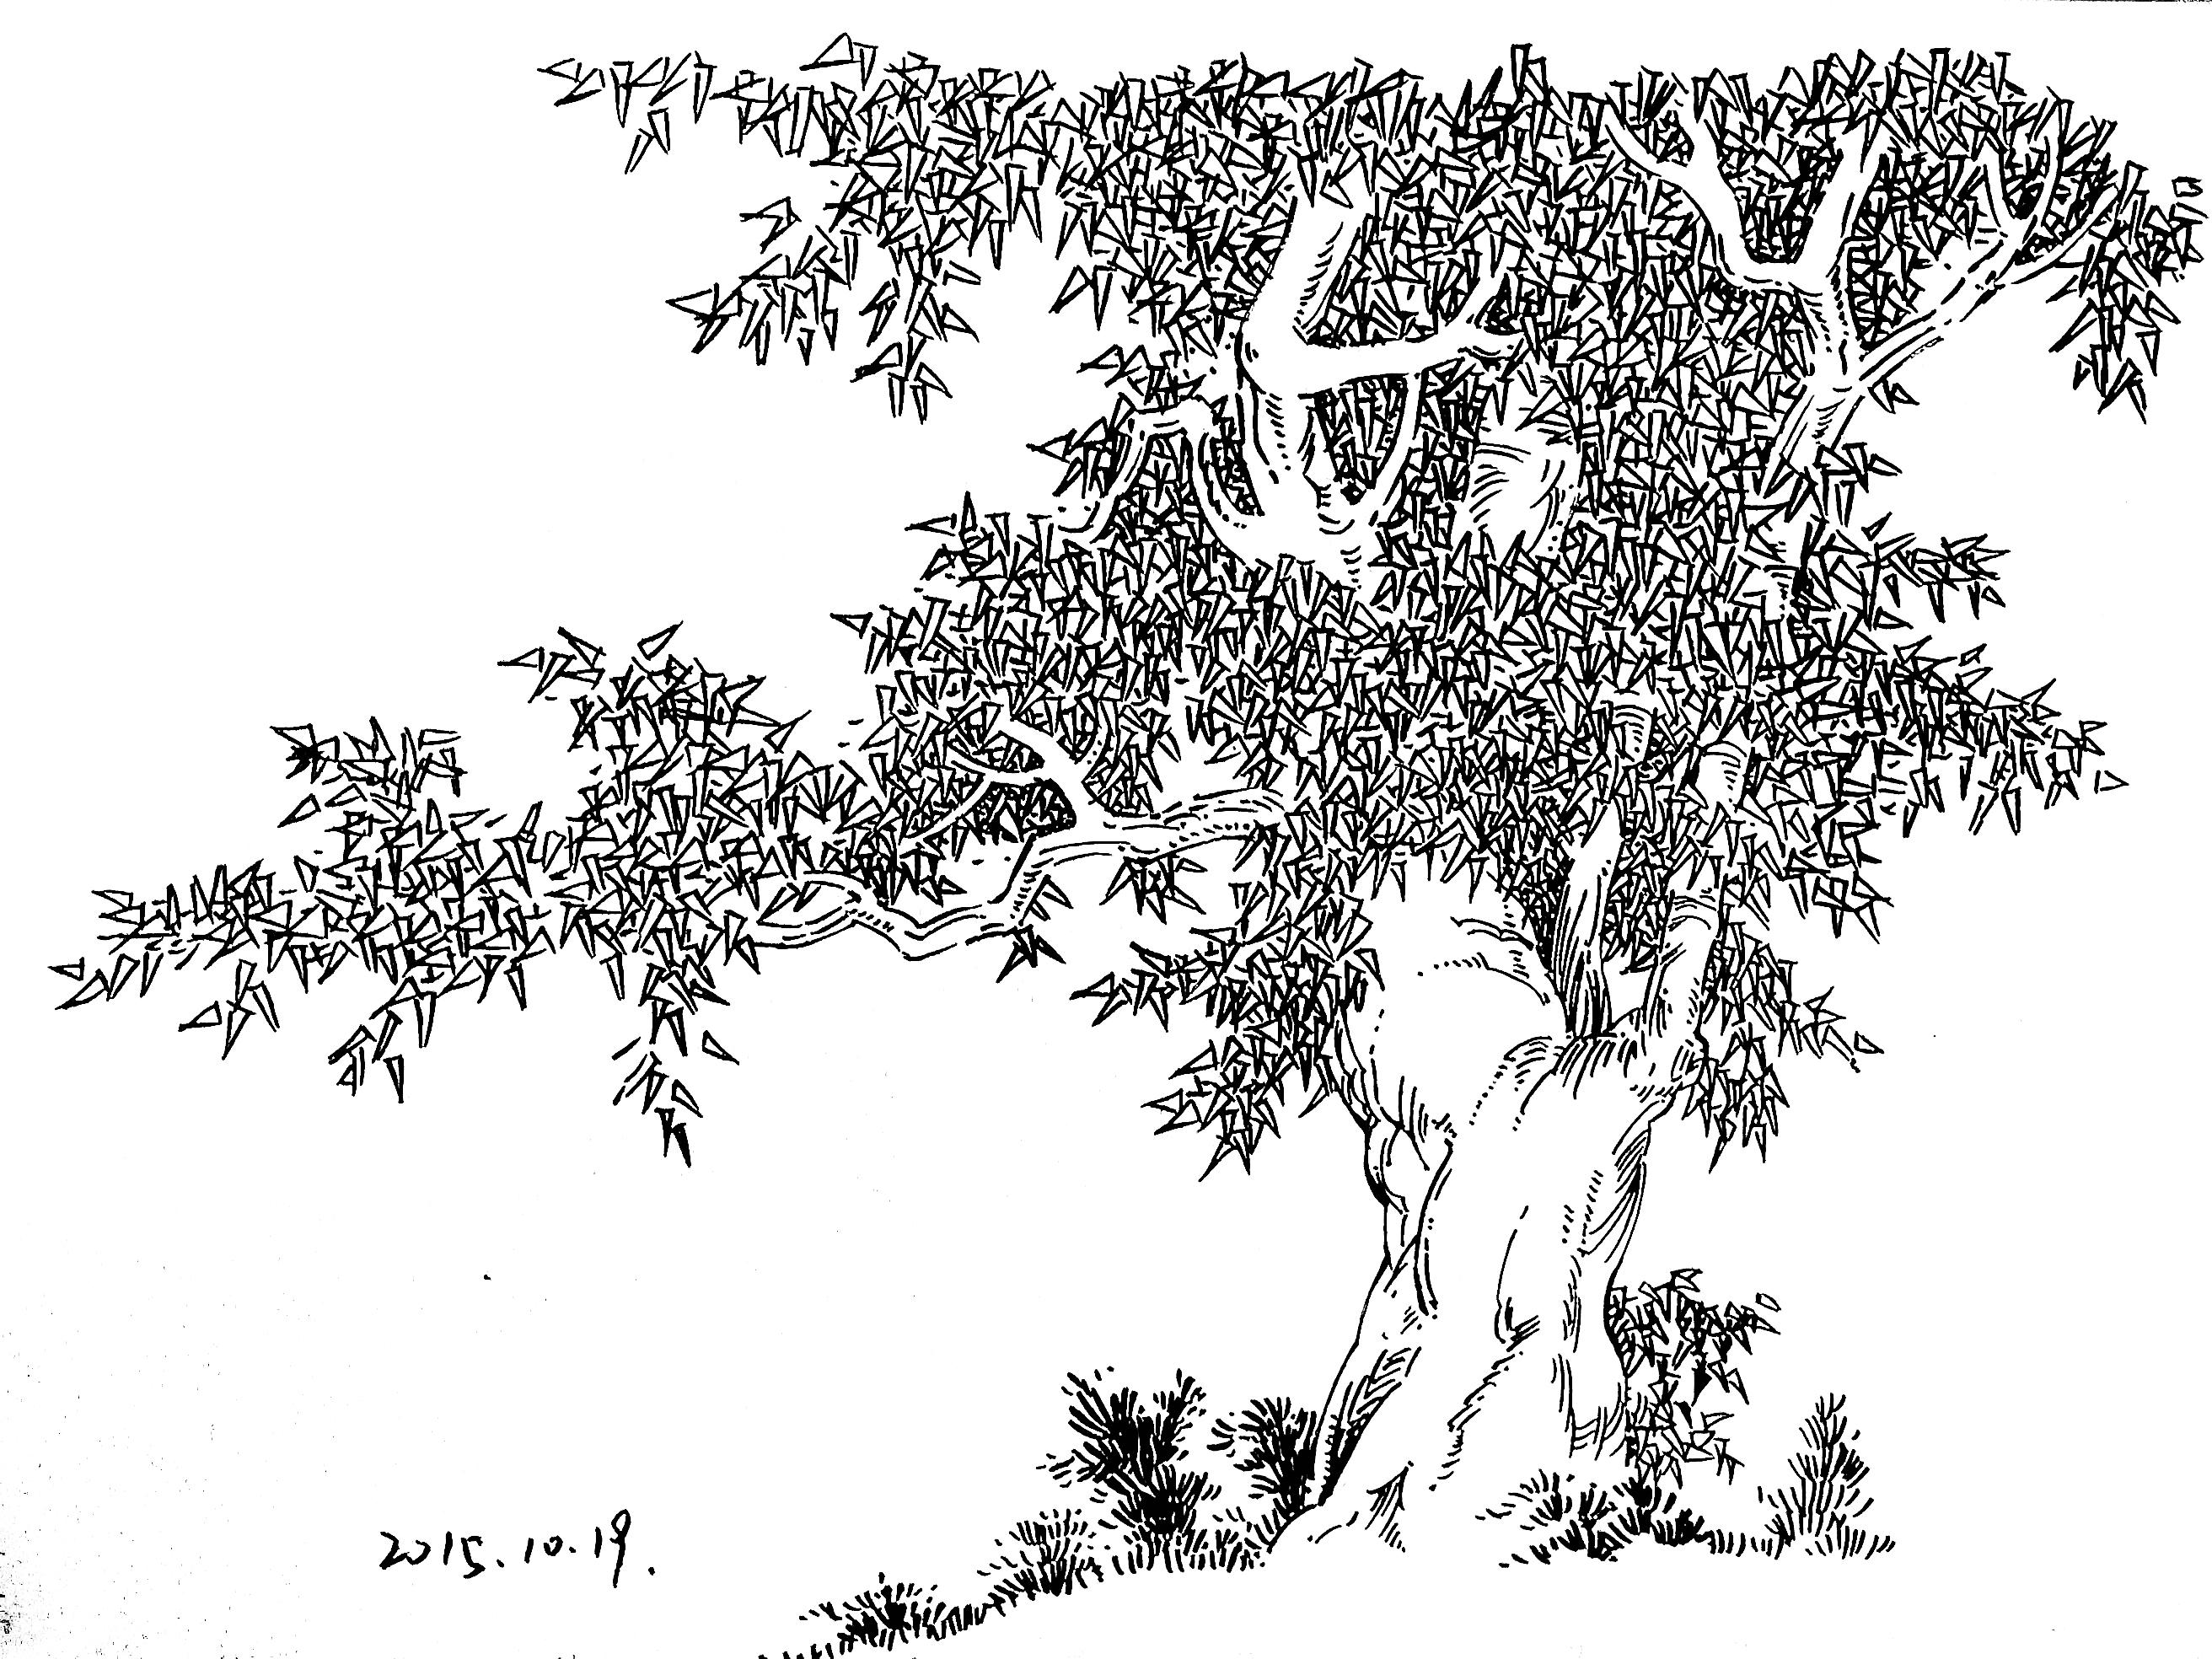 科技想象画作品《神奇的果树》-露西学画画